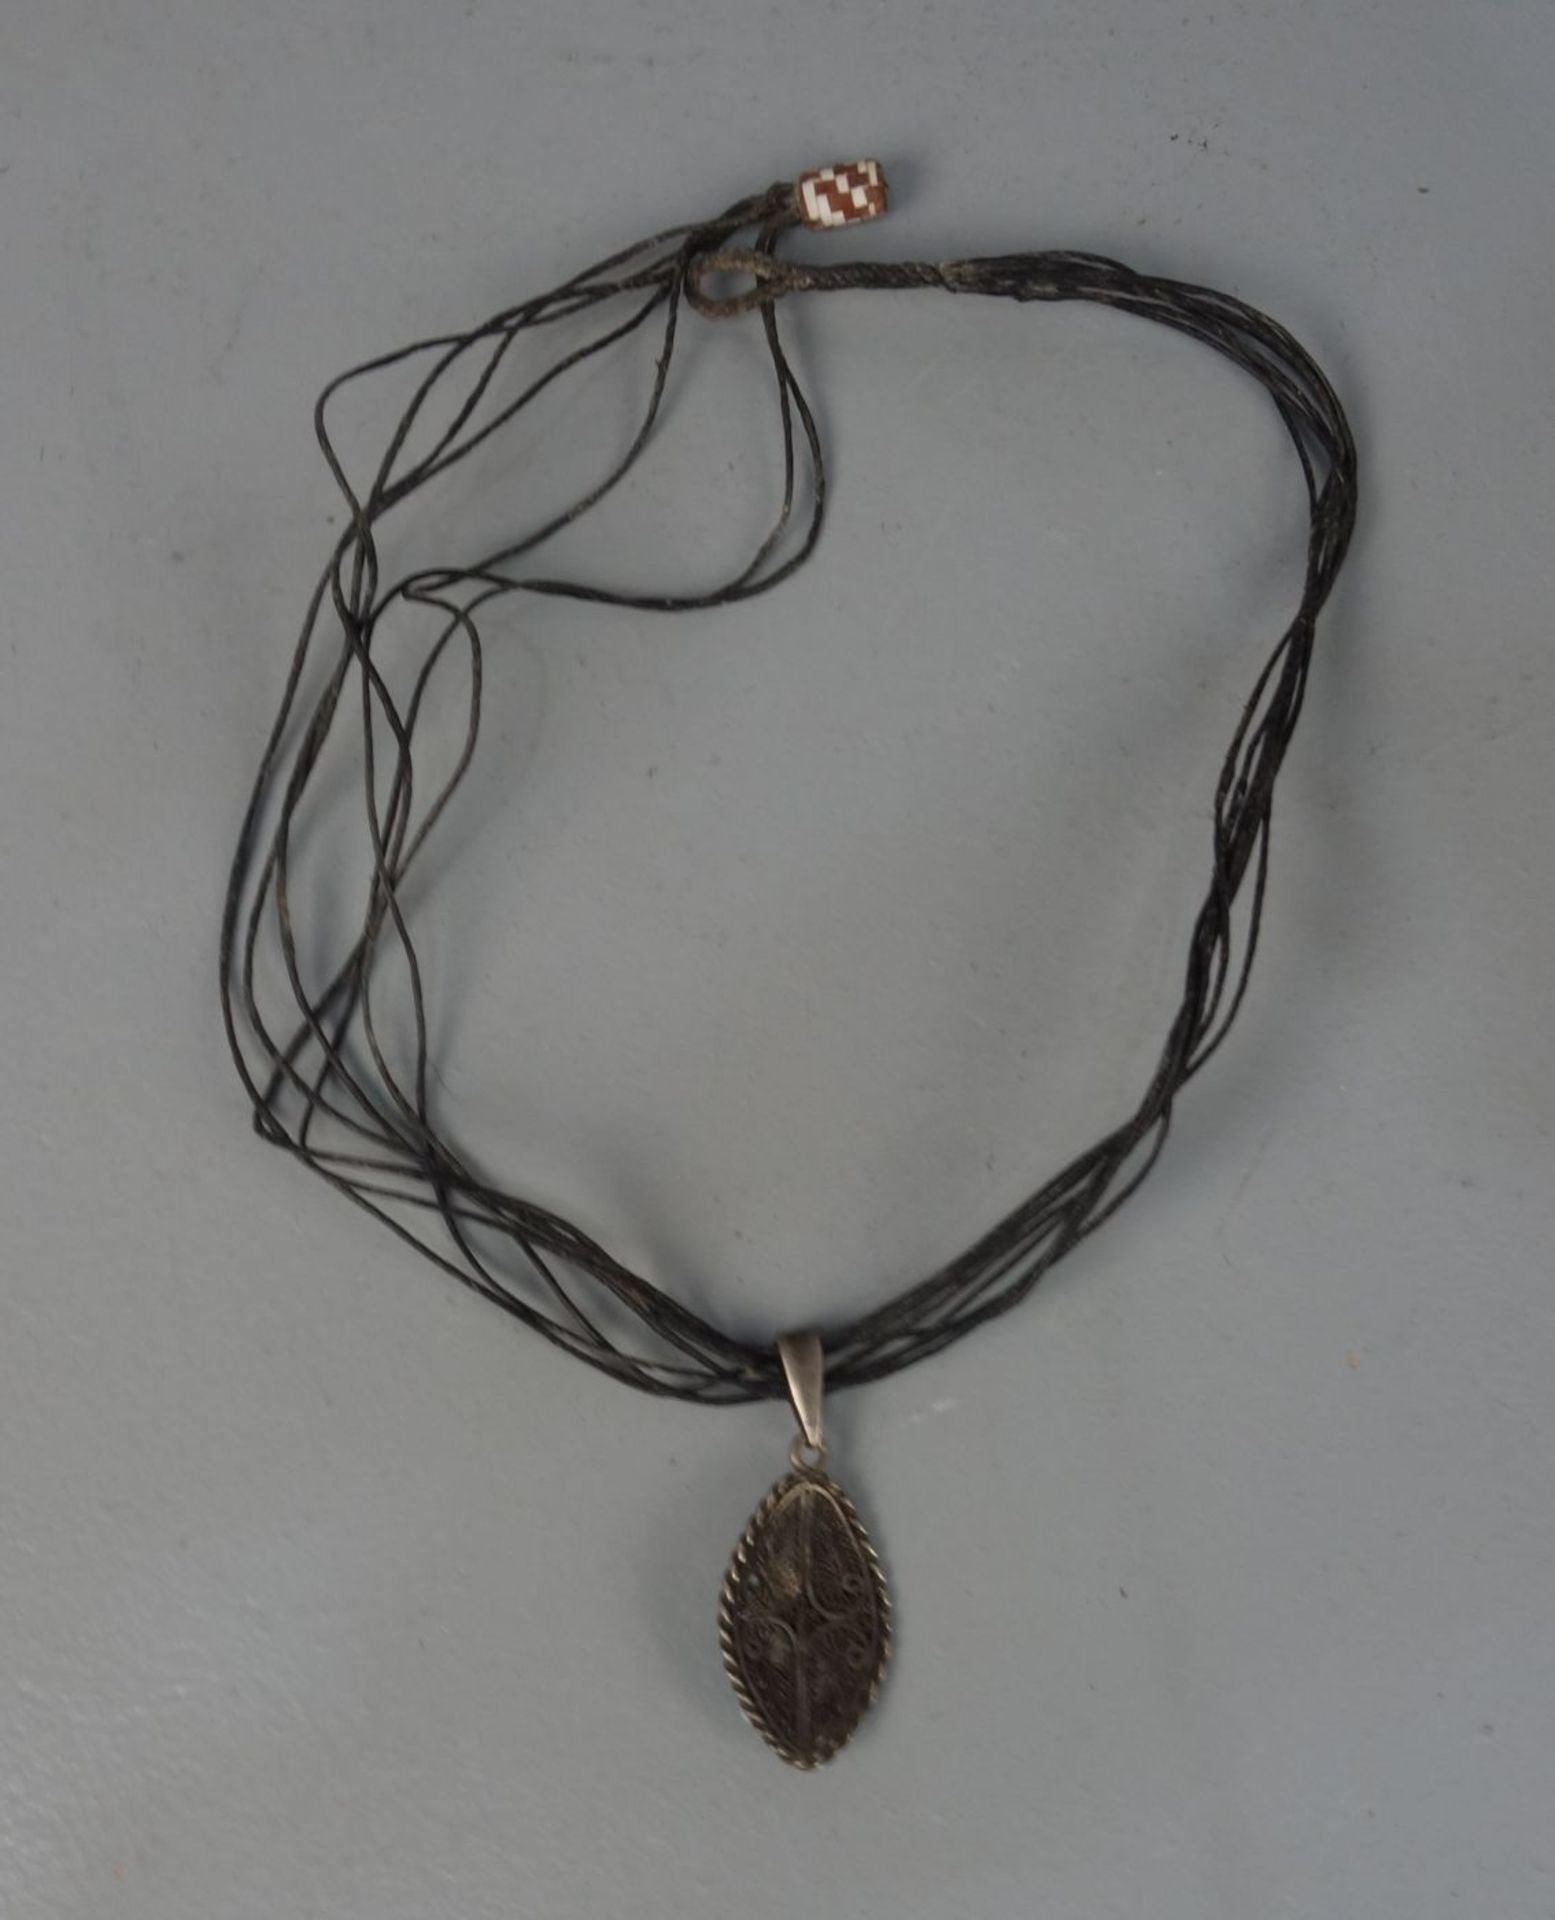 BERBER-SCHMUCK: KETTE / oriental necklace, Essaouria / Marokko; Leder und Silber (insgesamt 10,5 g). - Bild 2 aus 2